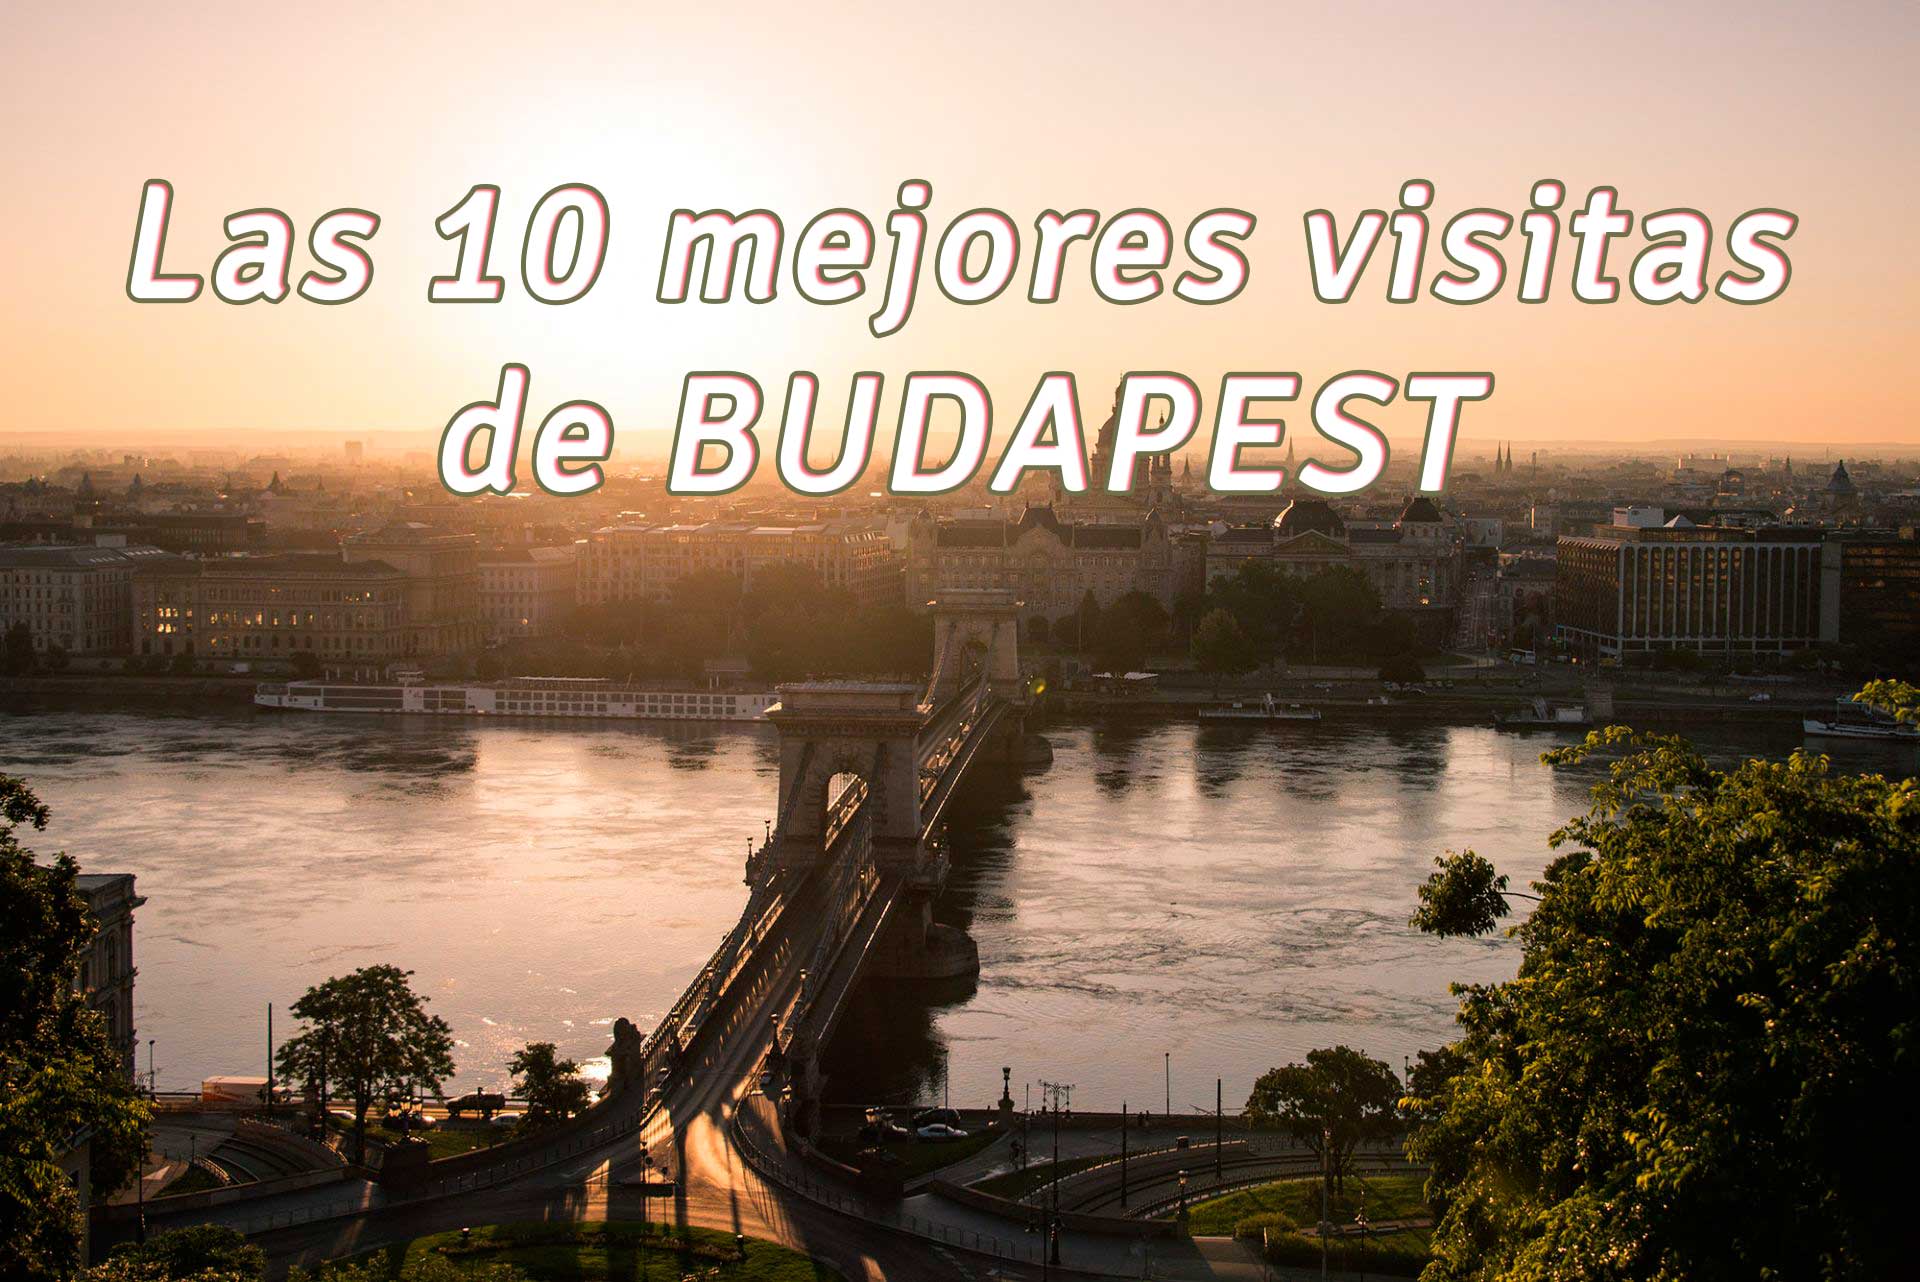 Las 10 mejores visitas de Budapest por BIDtravel Viajes